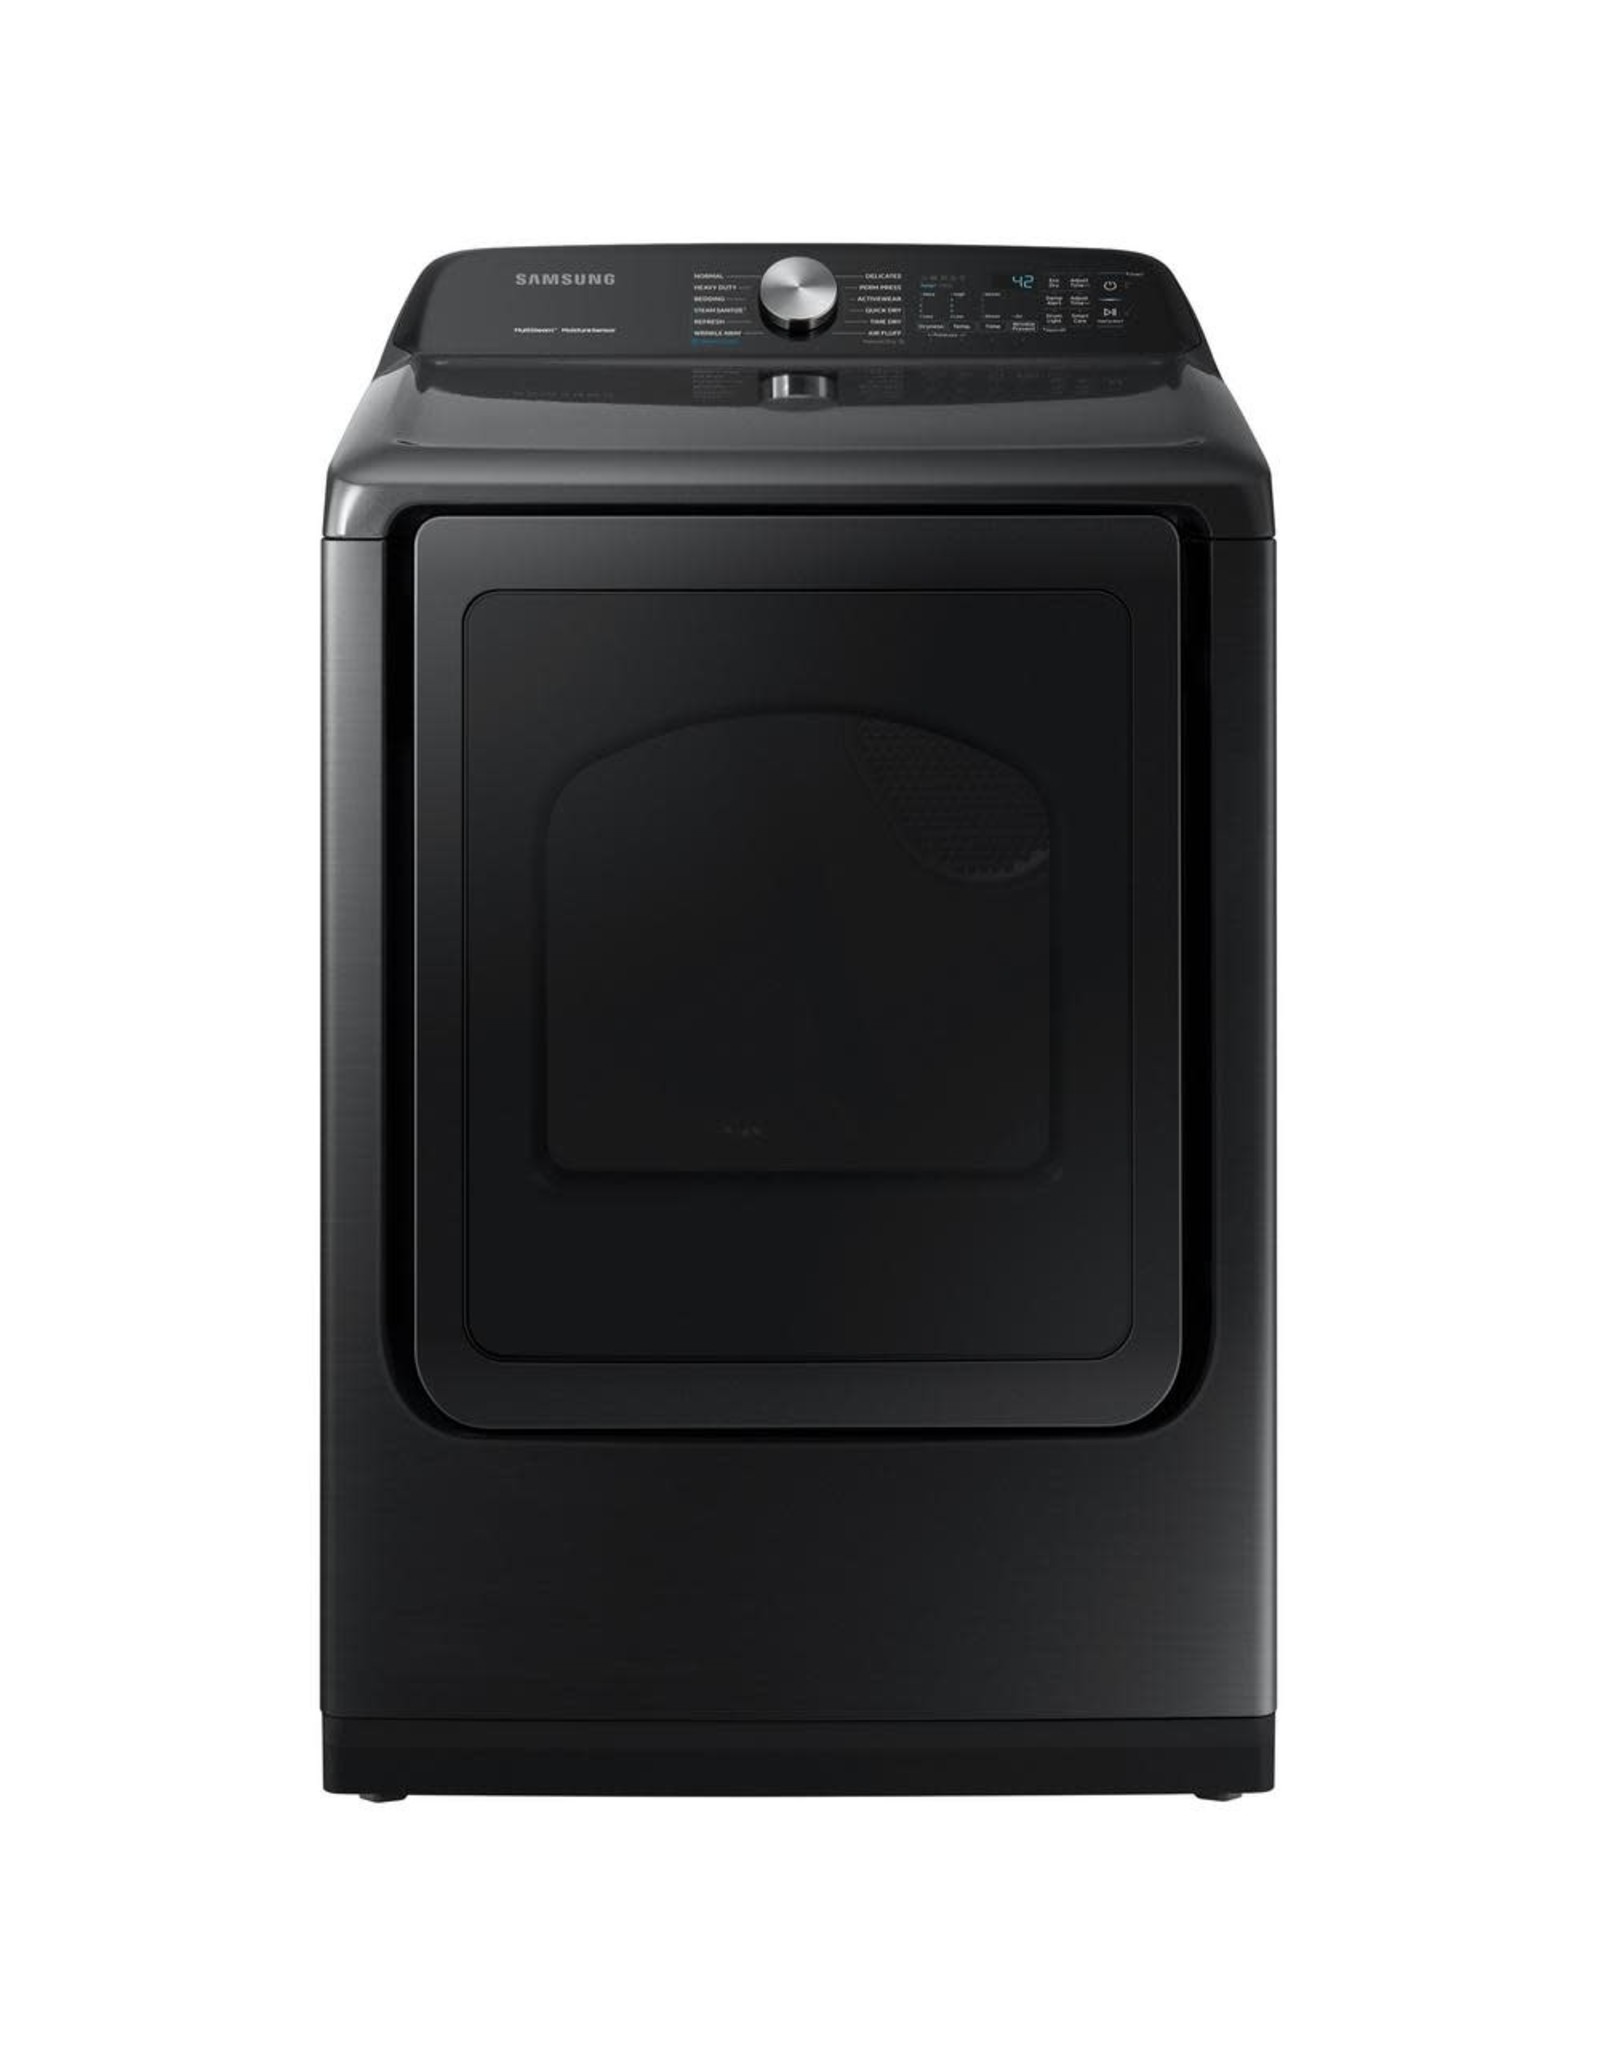 SAMSUNG DVE50R5400V Samsung 7.4 cu. ft. Fingerprint Resistant Black Stainless Electric Dryer with Steam Sanitize+